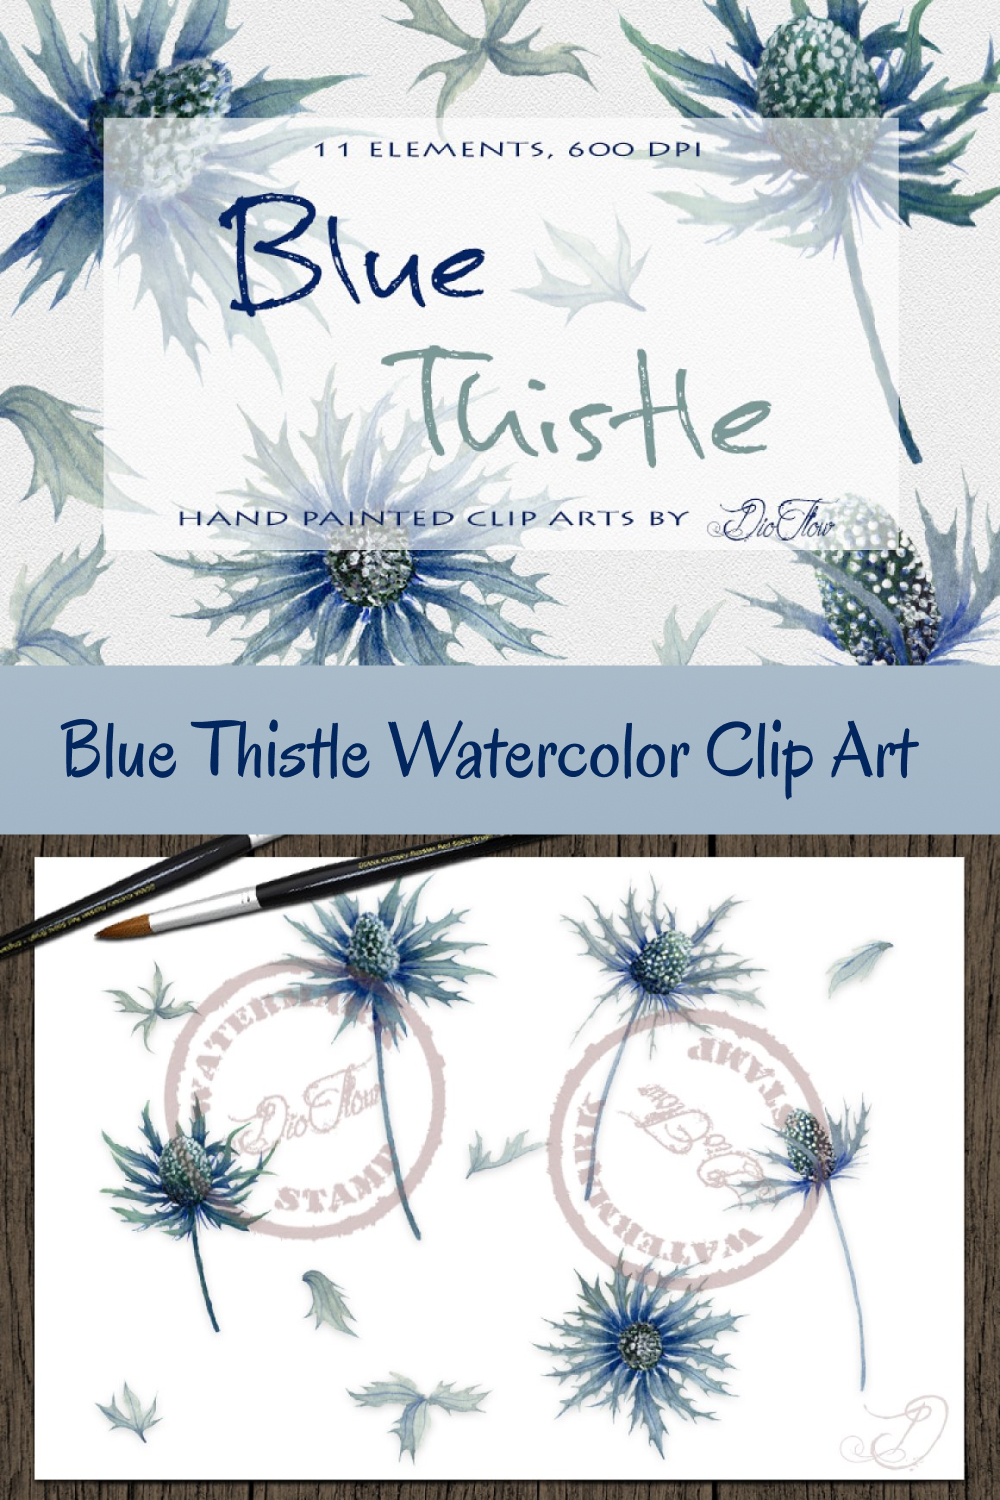 Blue thistle watercolor clip art of pinterest.